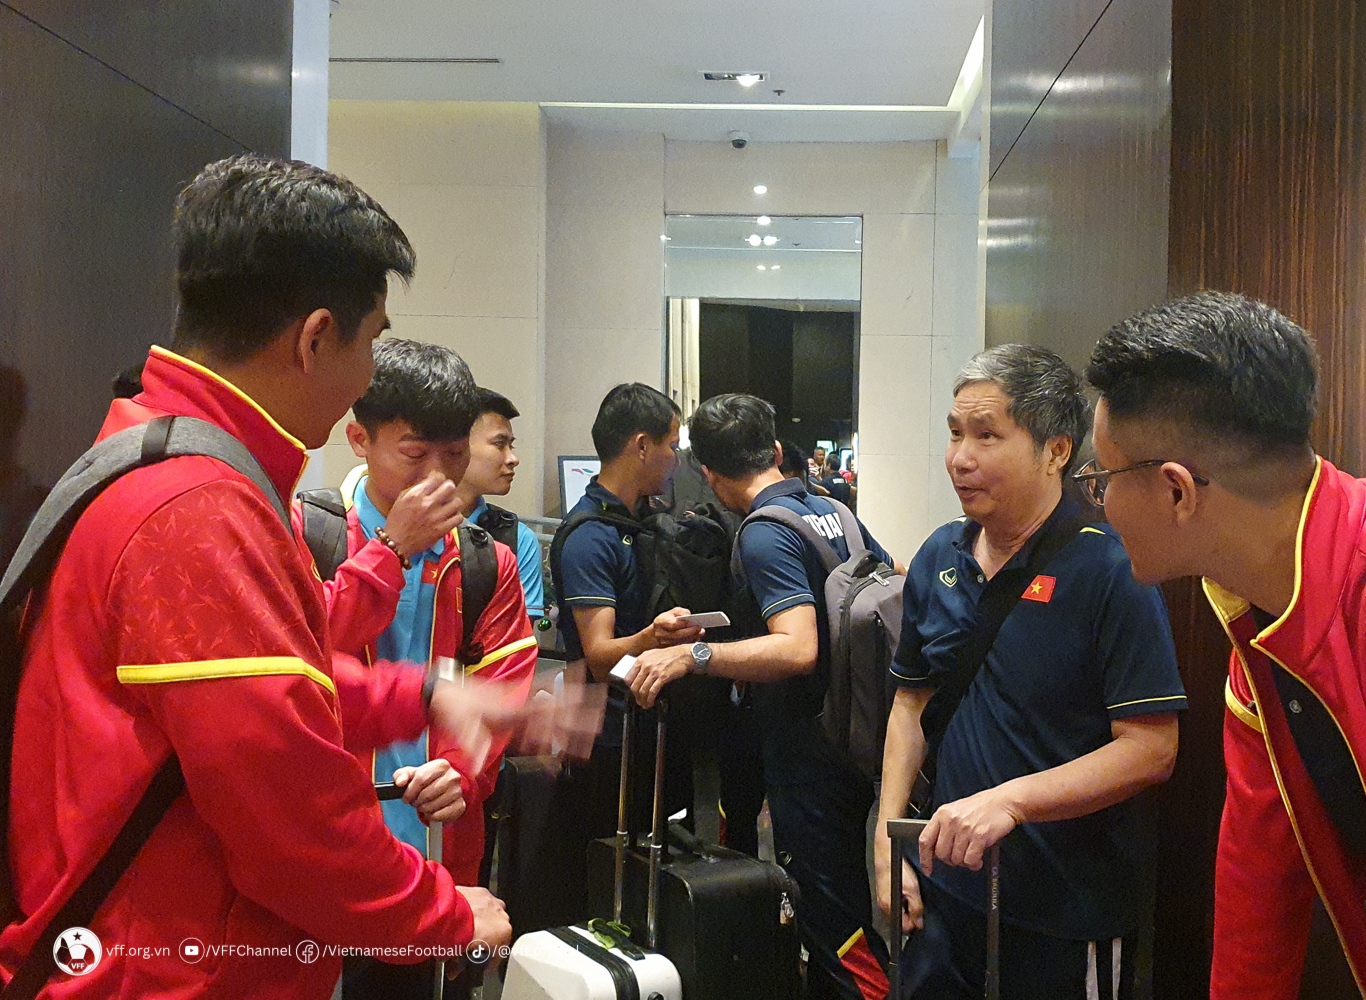 Đội tuyển Việt Nam được chào đón nồng nhiệt tại Philippines, xỏ giày tập ngay trong tối - Ảnh 6.